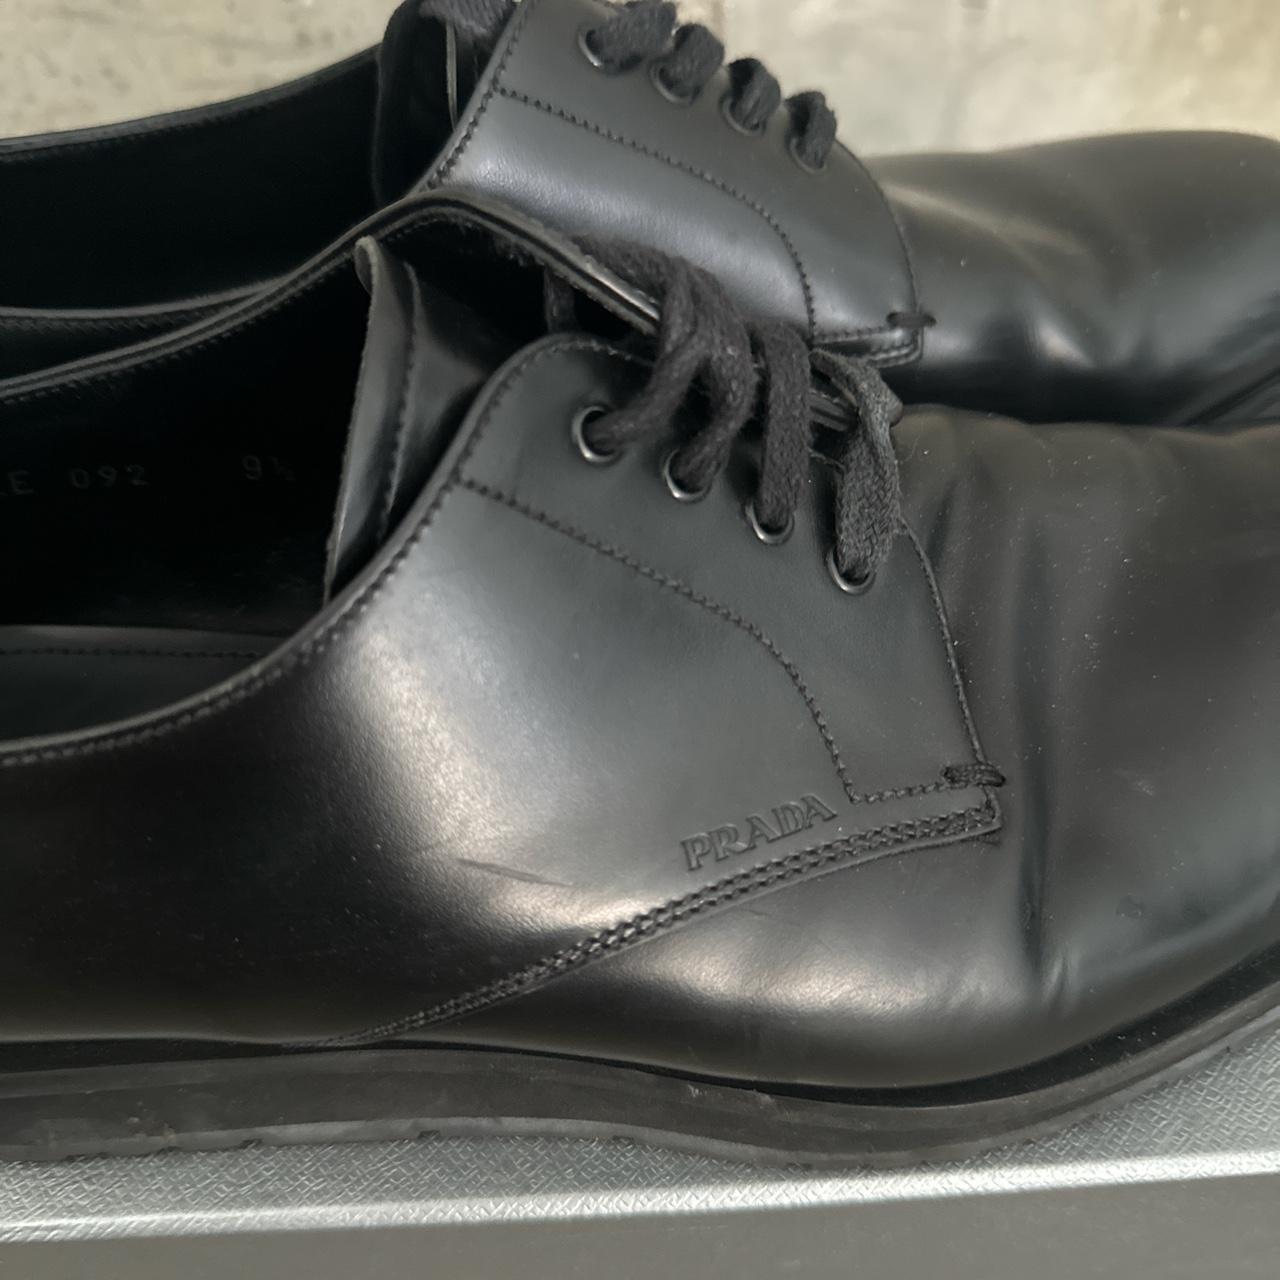 Prada black leather dress shoe sz 9 With box - Depop